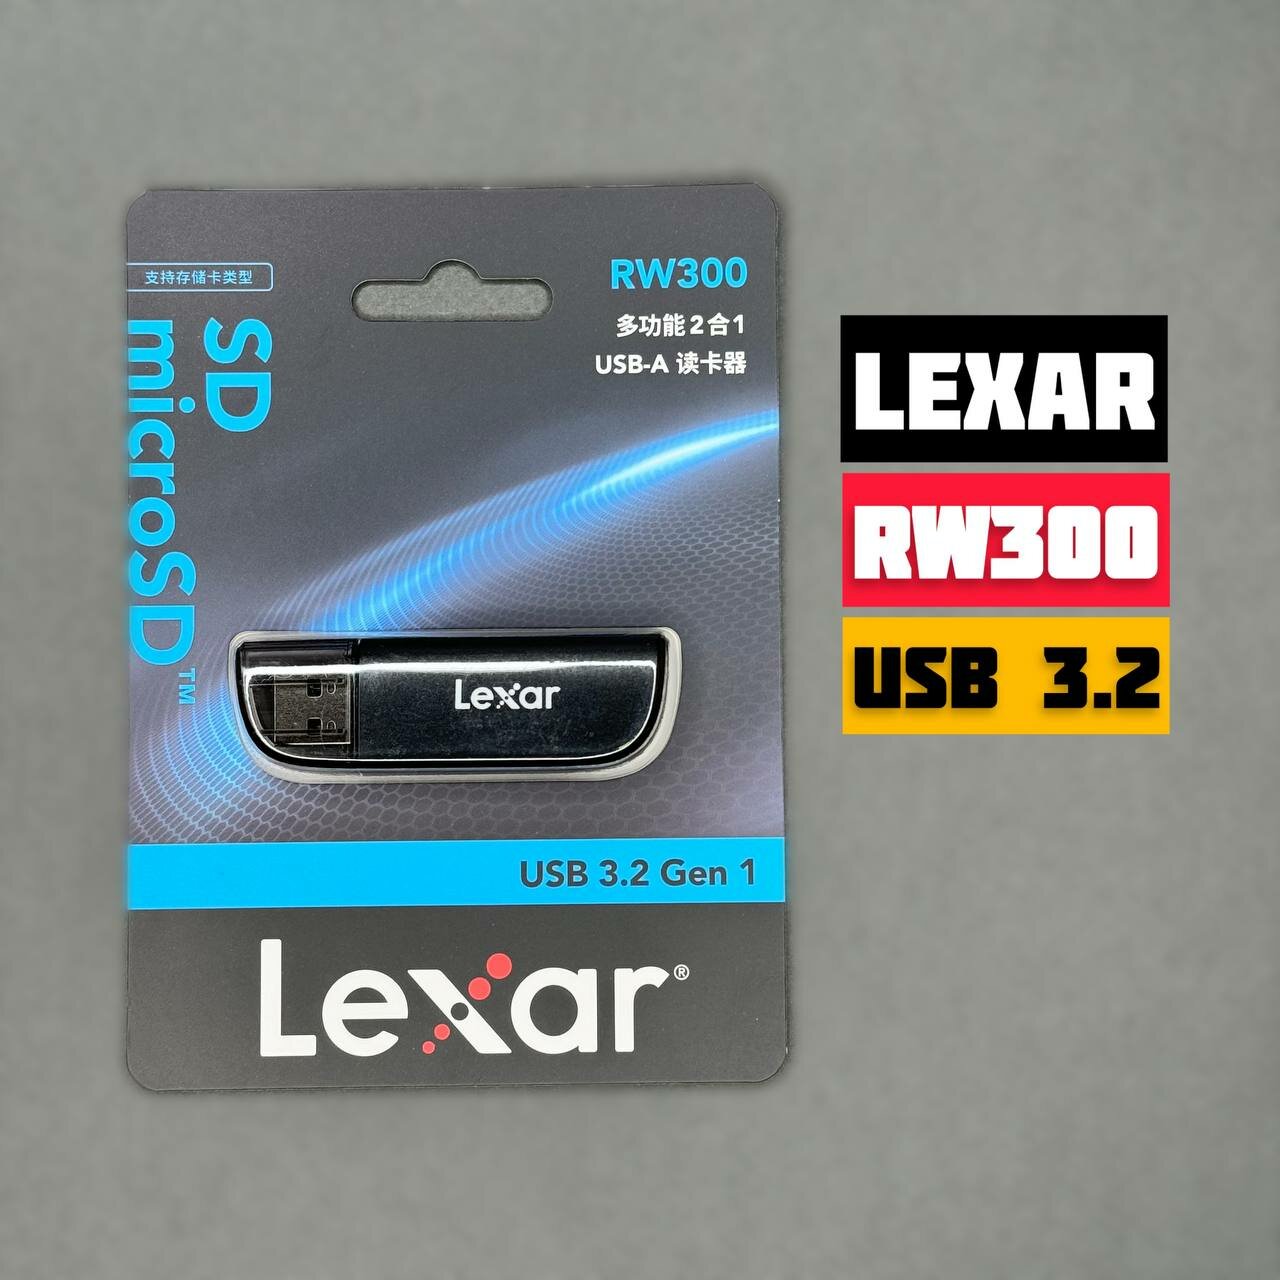 Картридер LEXAR RW330 / Картридер Micro SD USB 3.2 Gen 1 (до 170 мб/с)